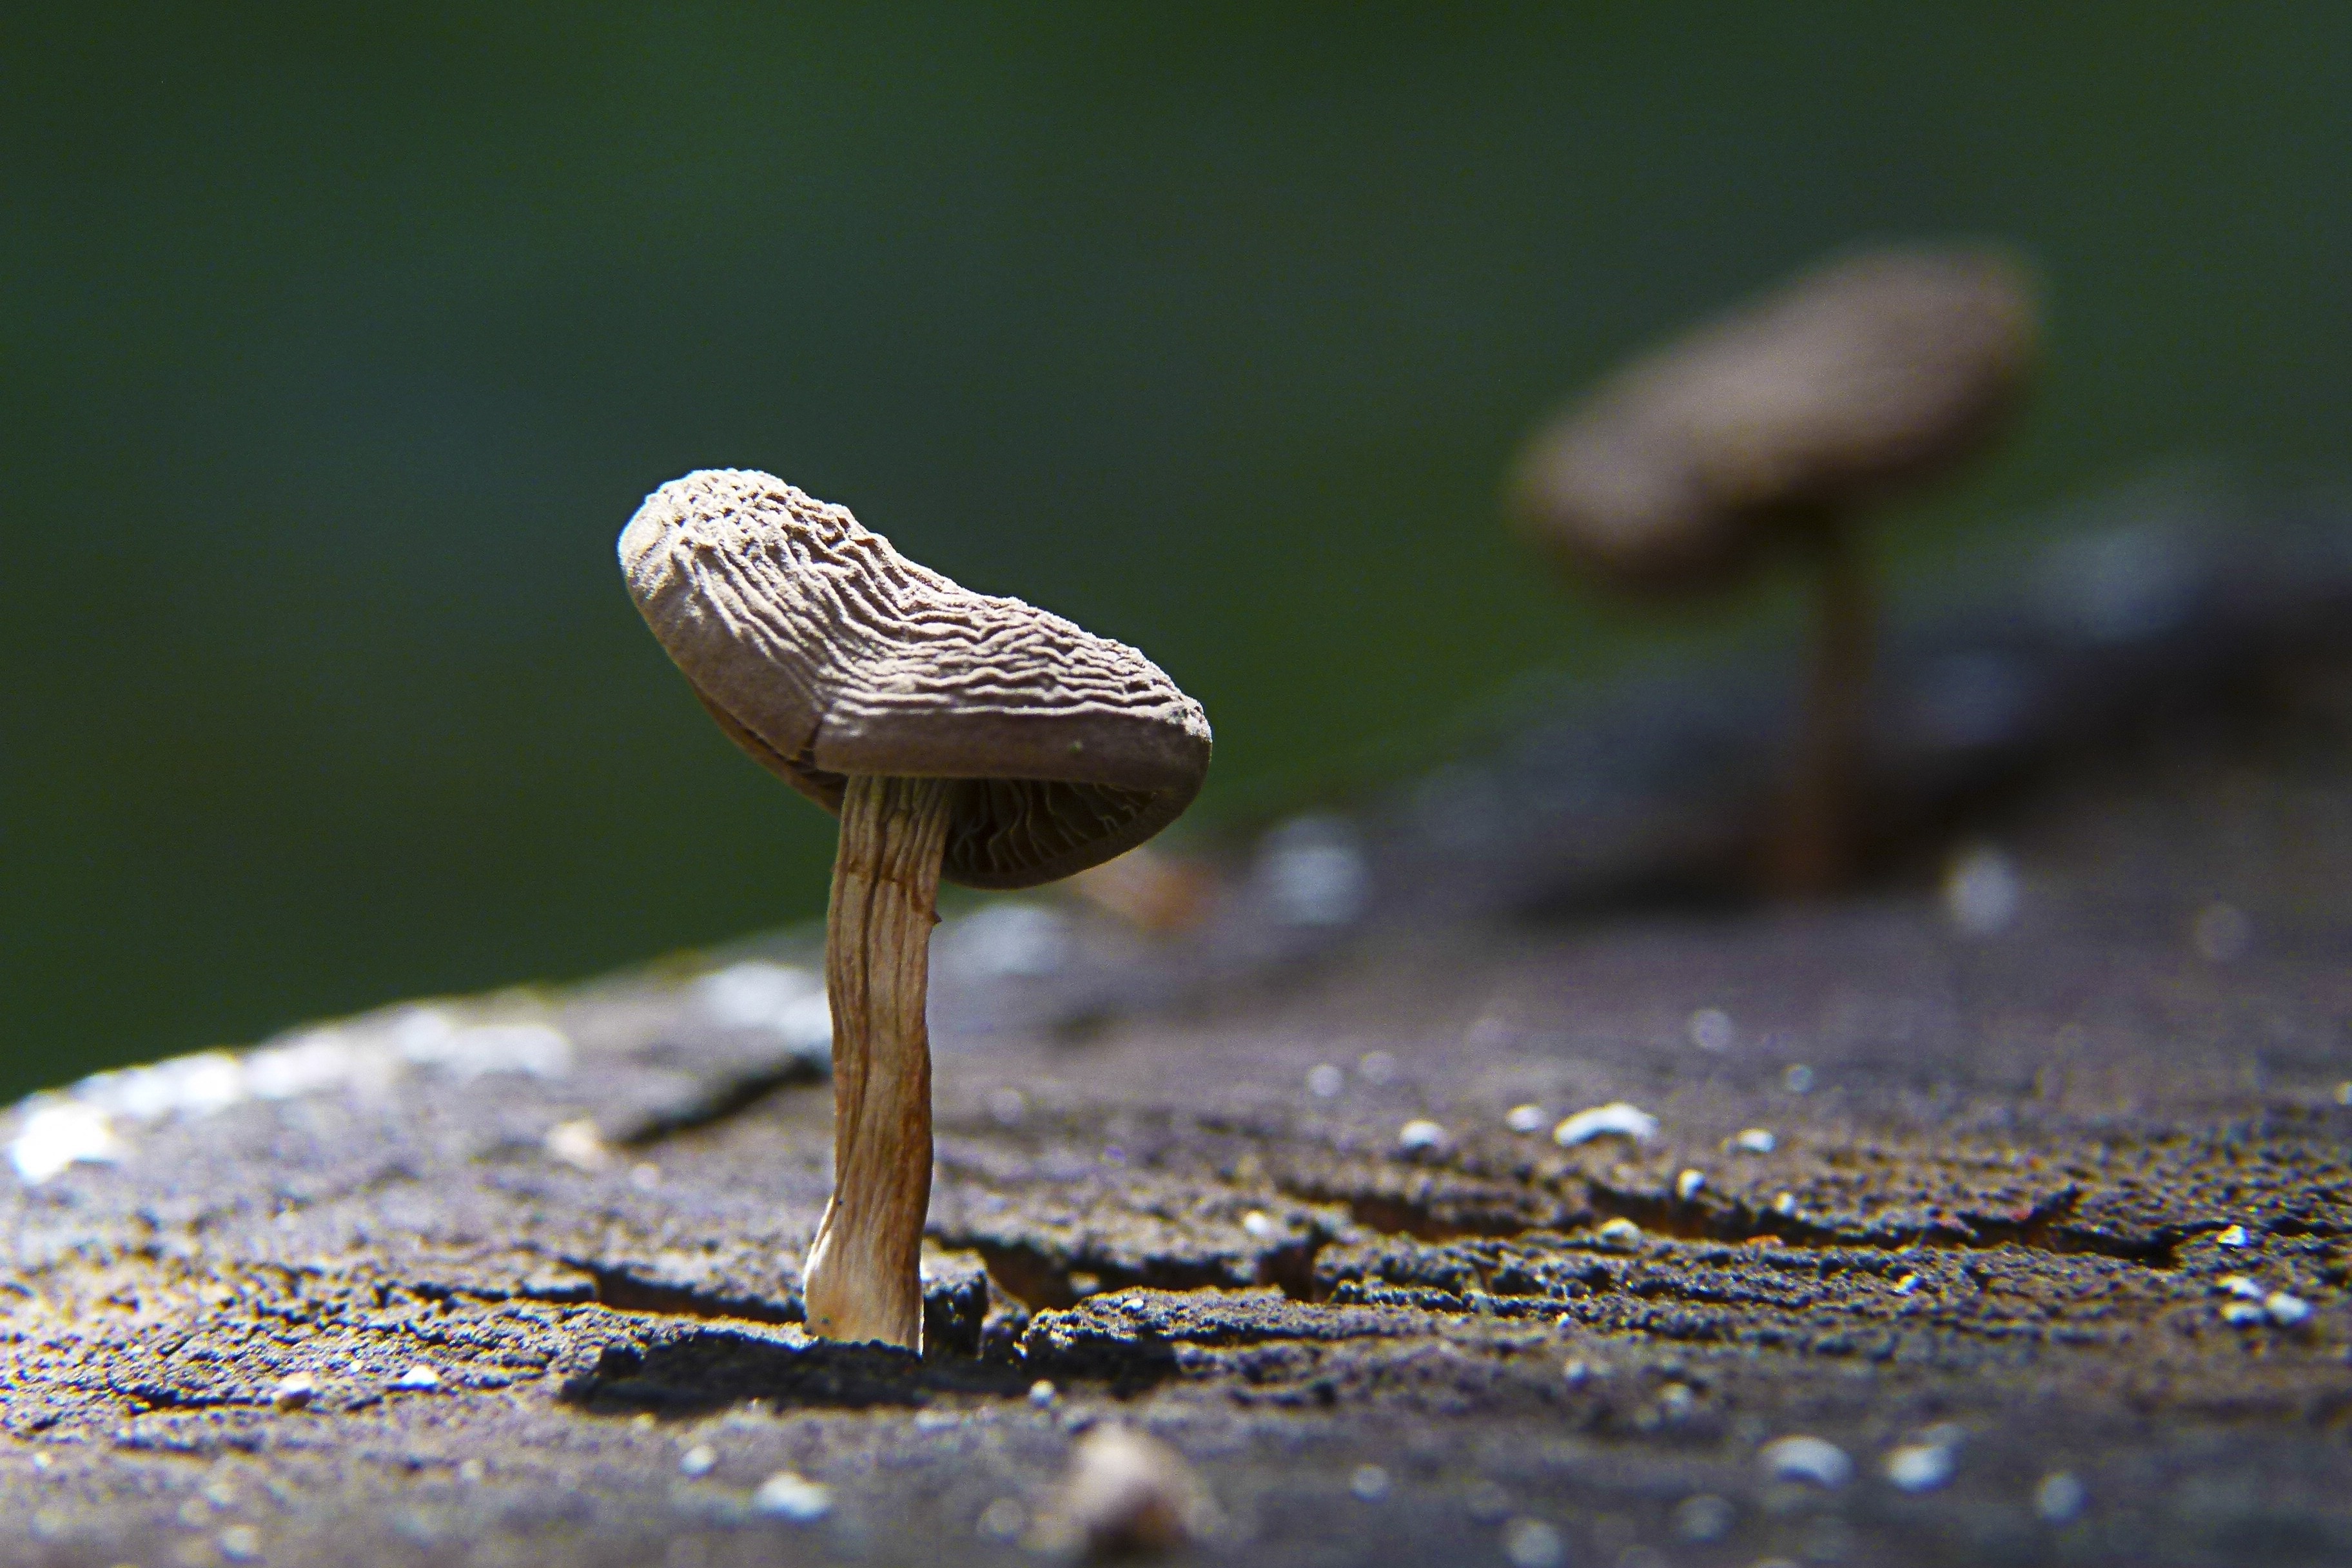 Stump, Mushroom, Nature, Tree, Fungus, mushroom, one animal